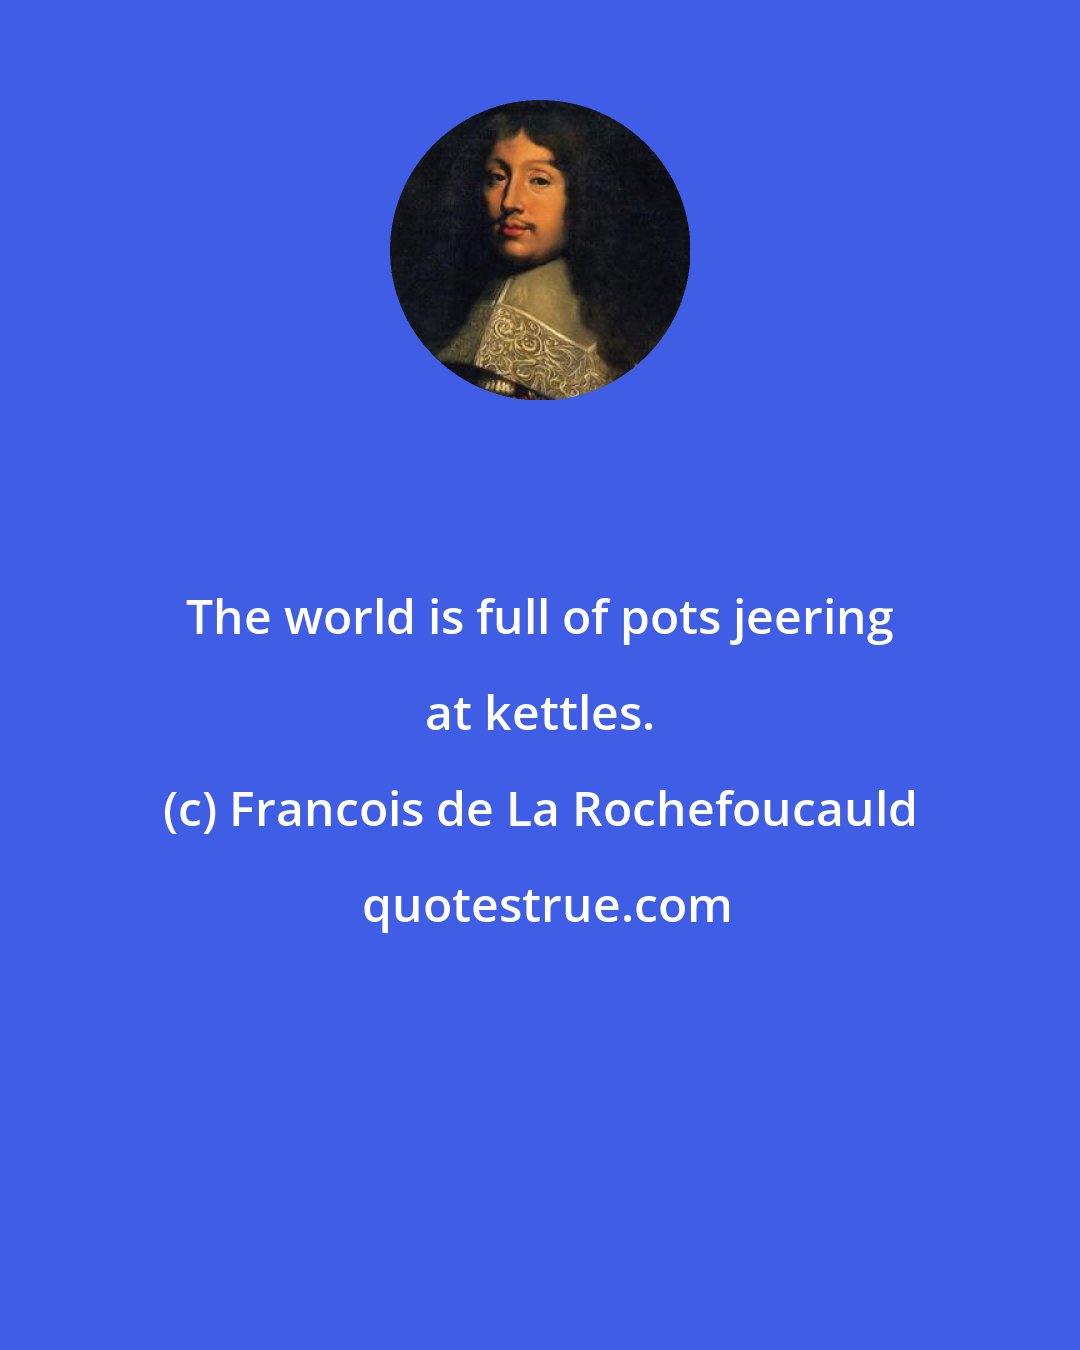 Francois de La Rochefoucauld: The world is full of pots jeering at kettles.